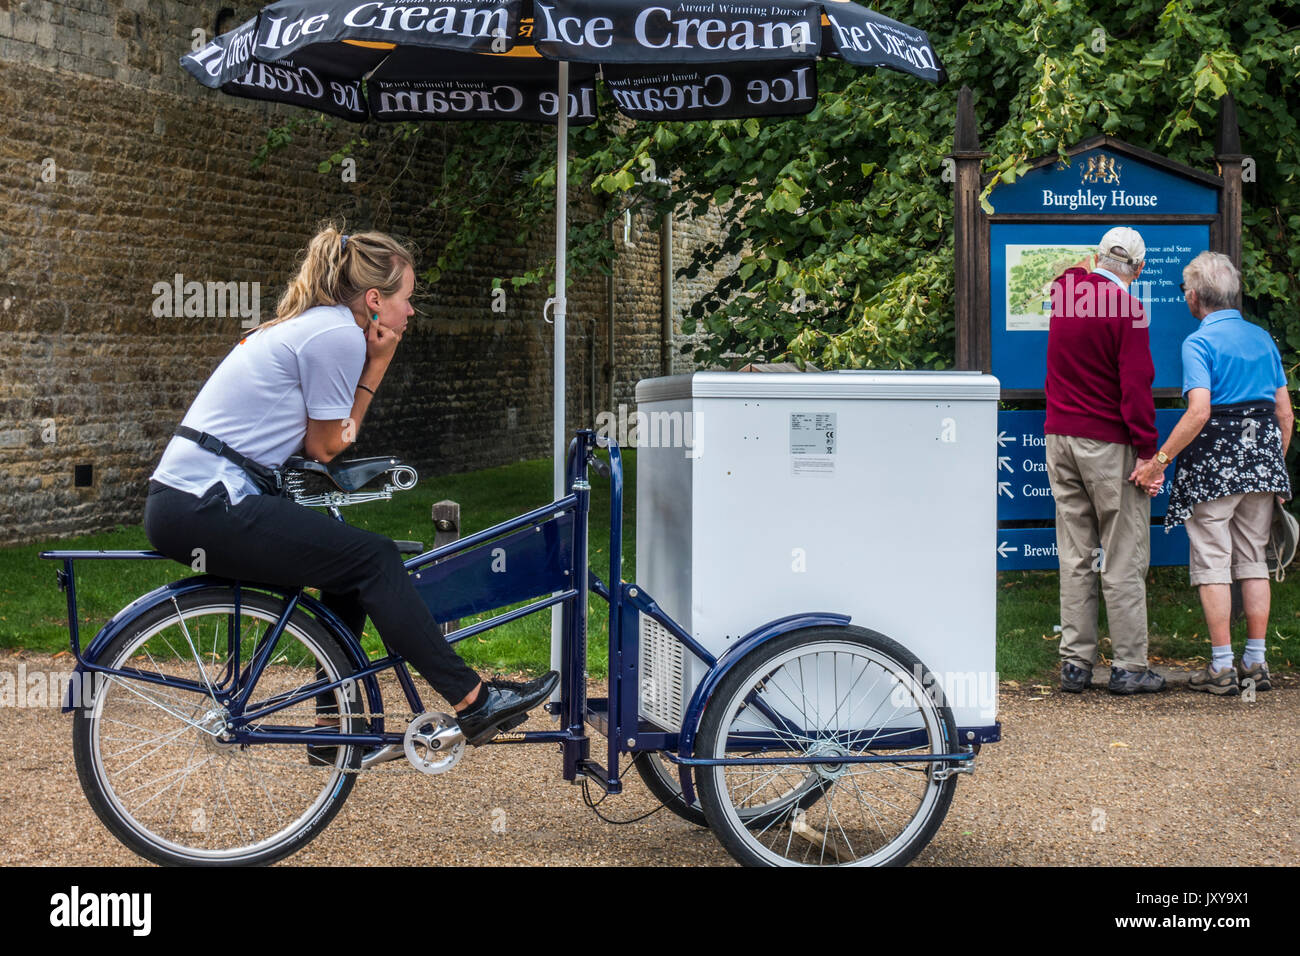 Une jolie fille vendeur de crème glacée, assis sur un vélo, à regarder un vieux couple, à l'extérieur de l'entrée des visiteurs à Burghley House, près de Stamford, England, UK. Banque D'Images